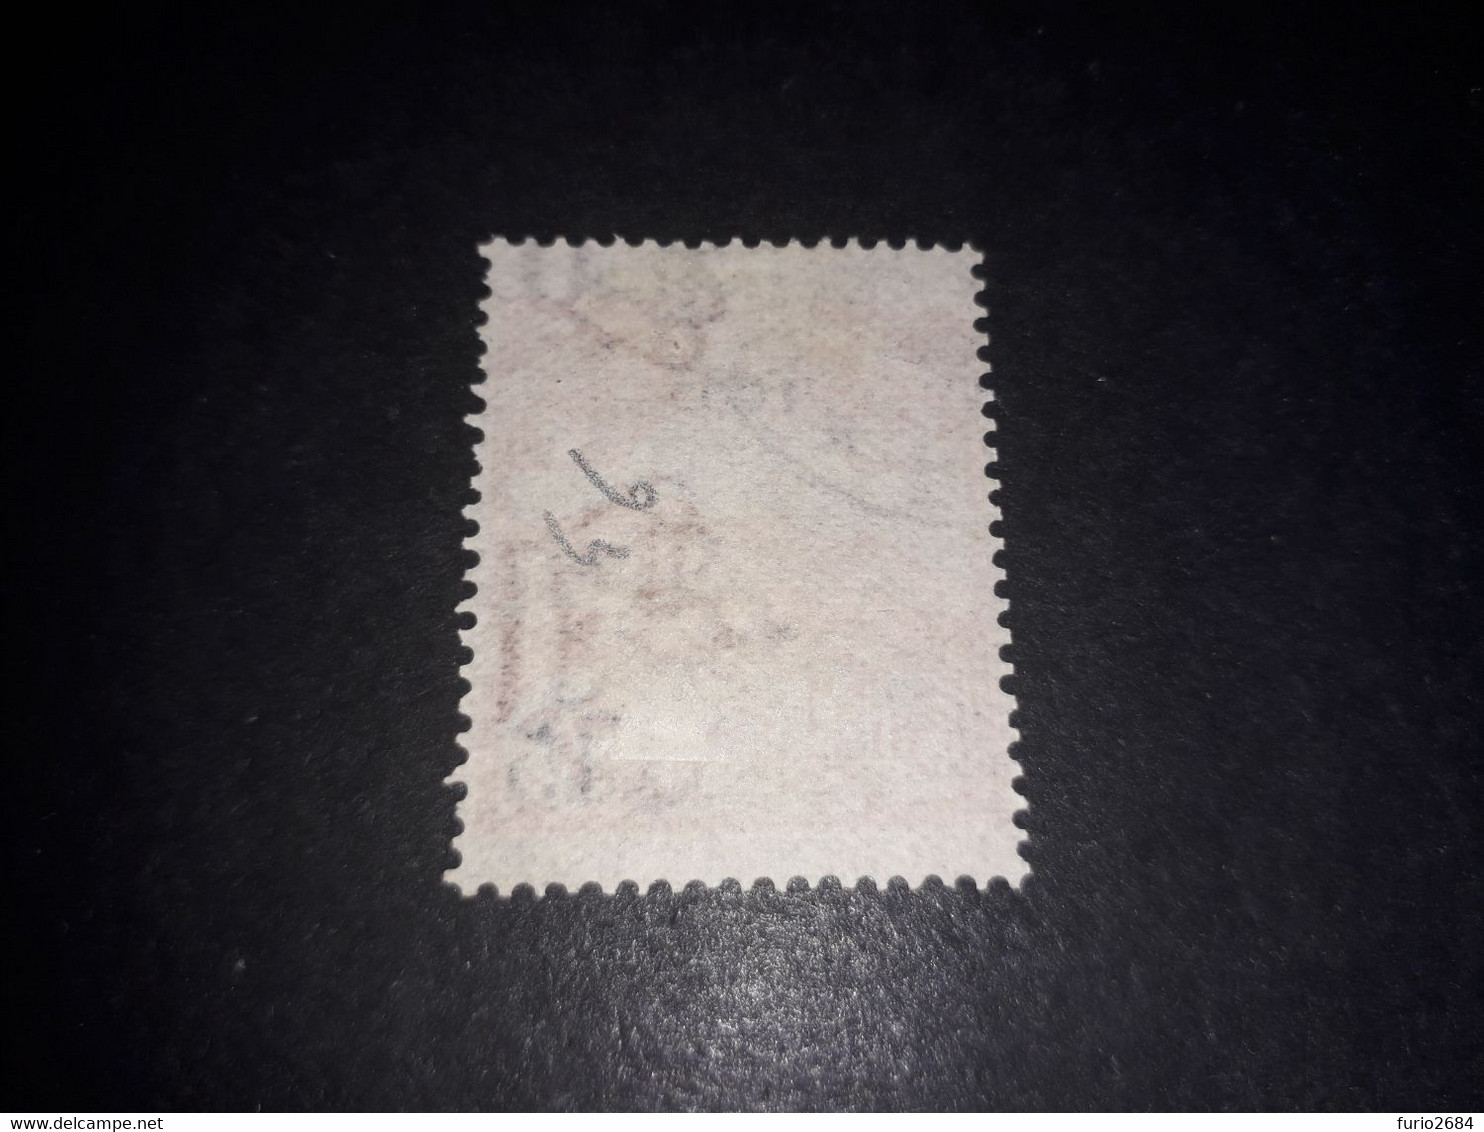 01AL10 REPUB. DI SAN MARINO 1905 FRANCOBOLLO SOPRASTAMPATO 1905 E NUOVO VALORE "XO" - Used Stamps